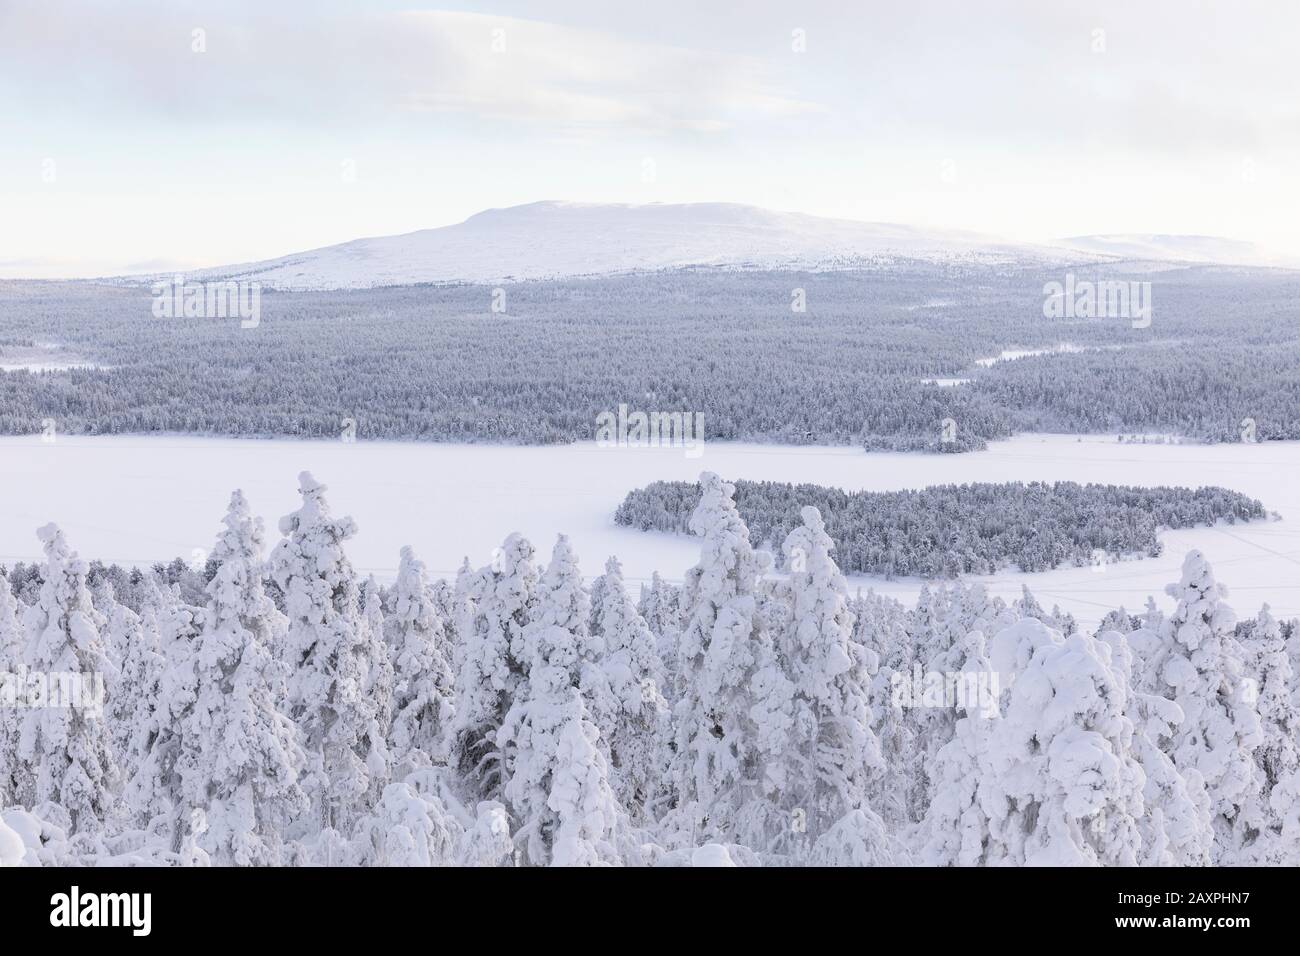 Finland, Lapland, winter, Enontekiö, landscape of Jyppyrä, view of Pyhäkero and Ounasjoki Stock Photo